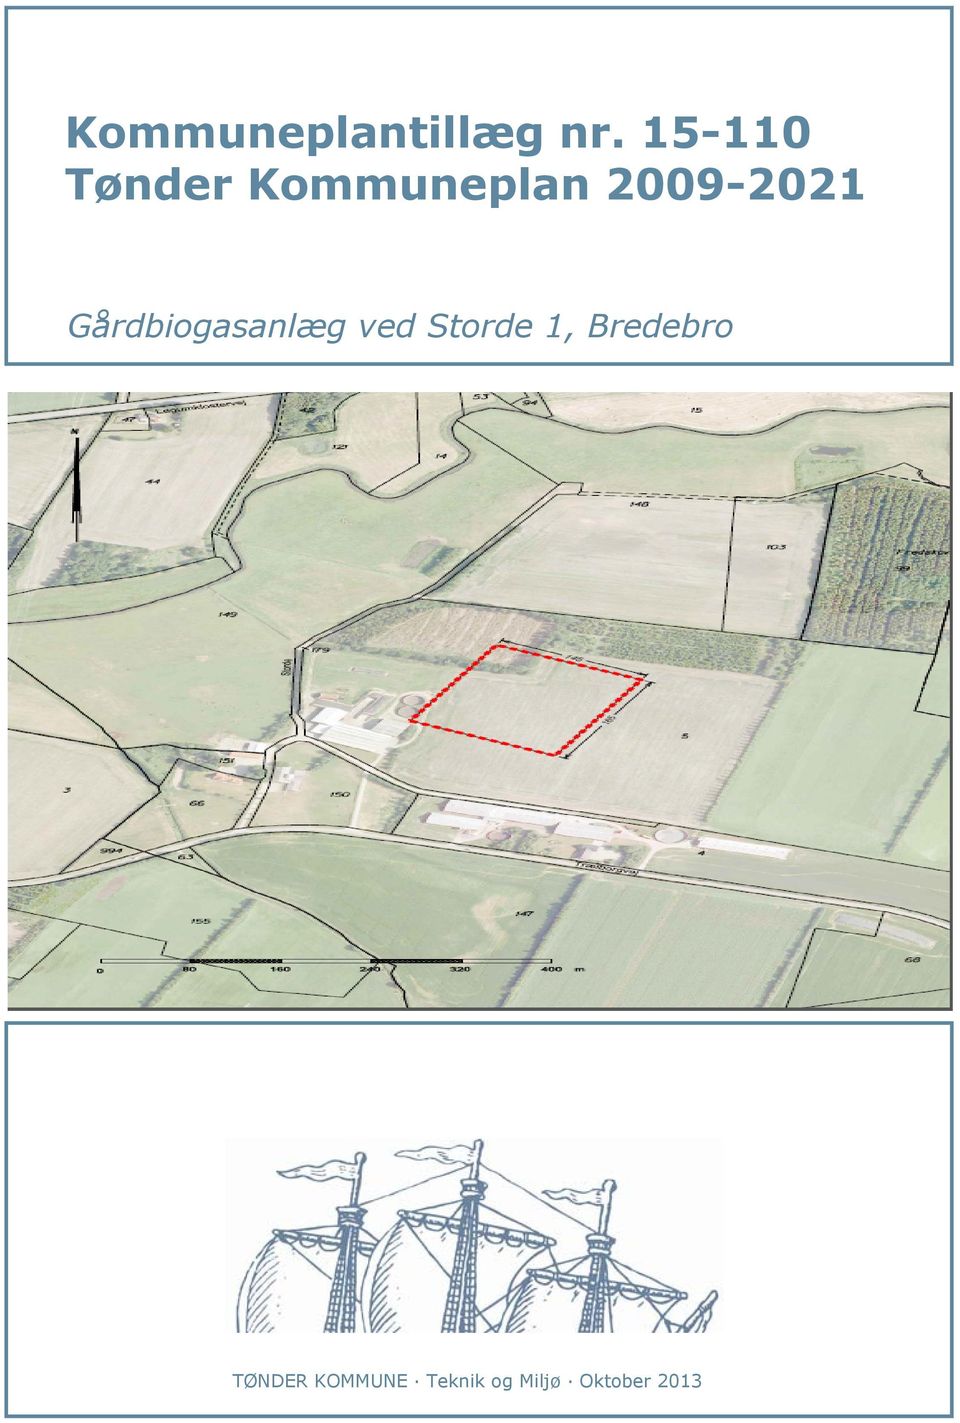 2009-2021 Gårdbiogasanlæg ved